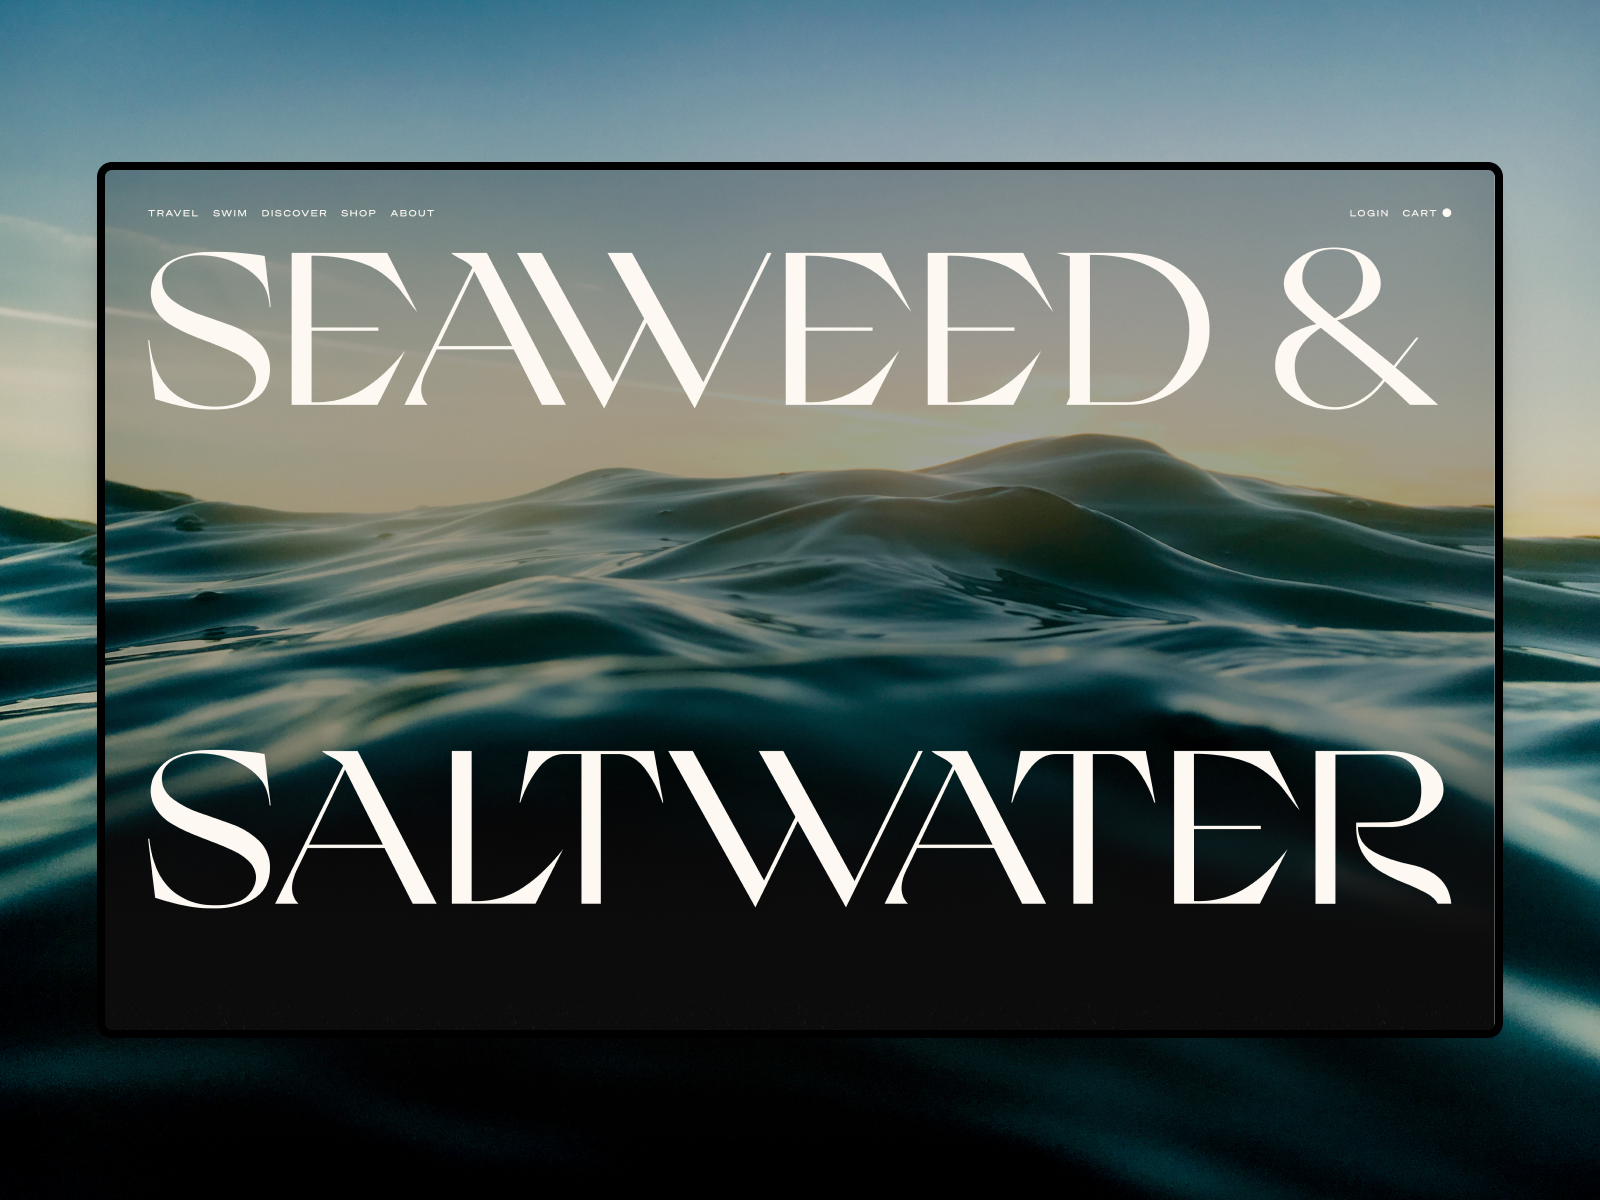 Seaweed & Saltwater